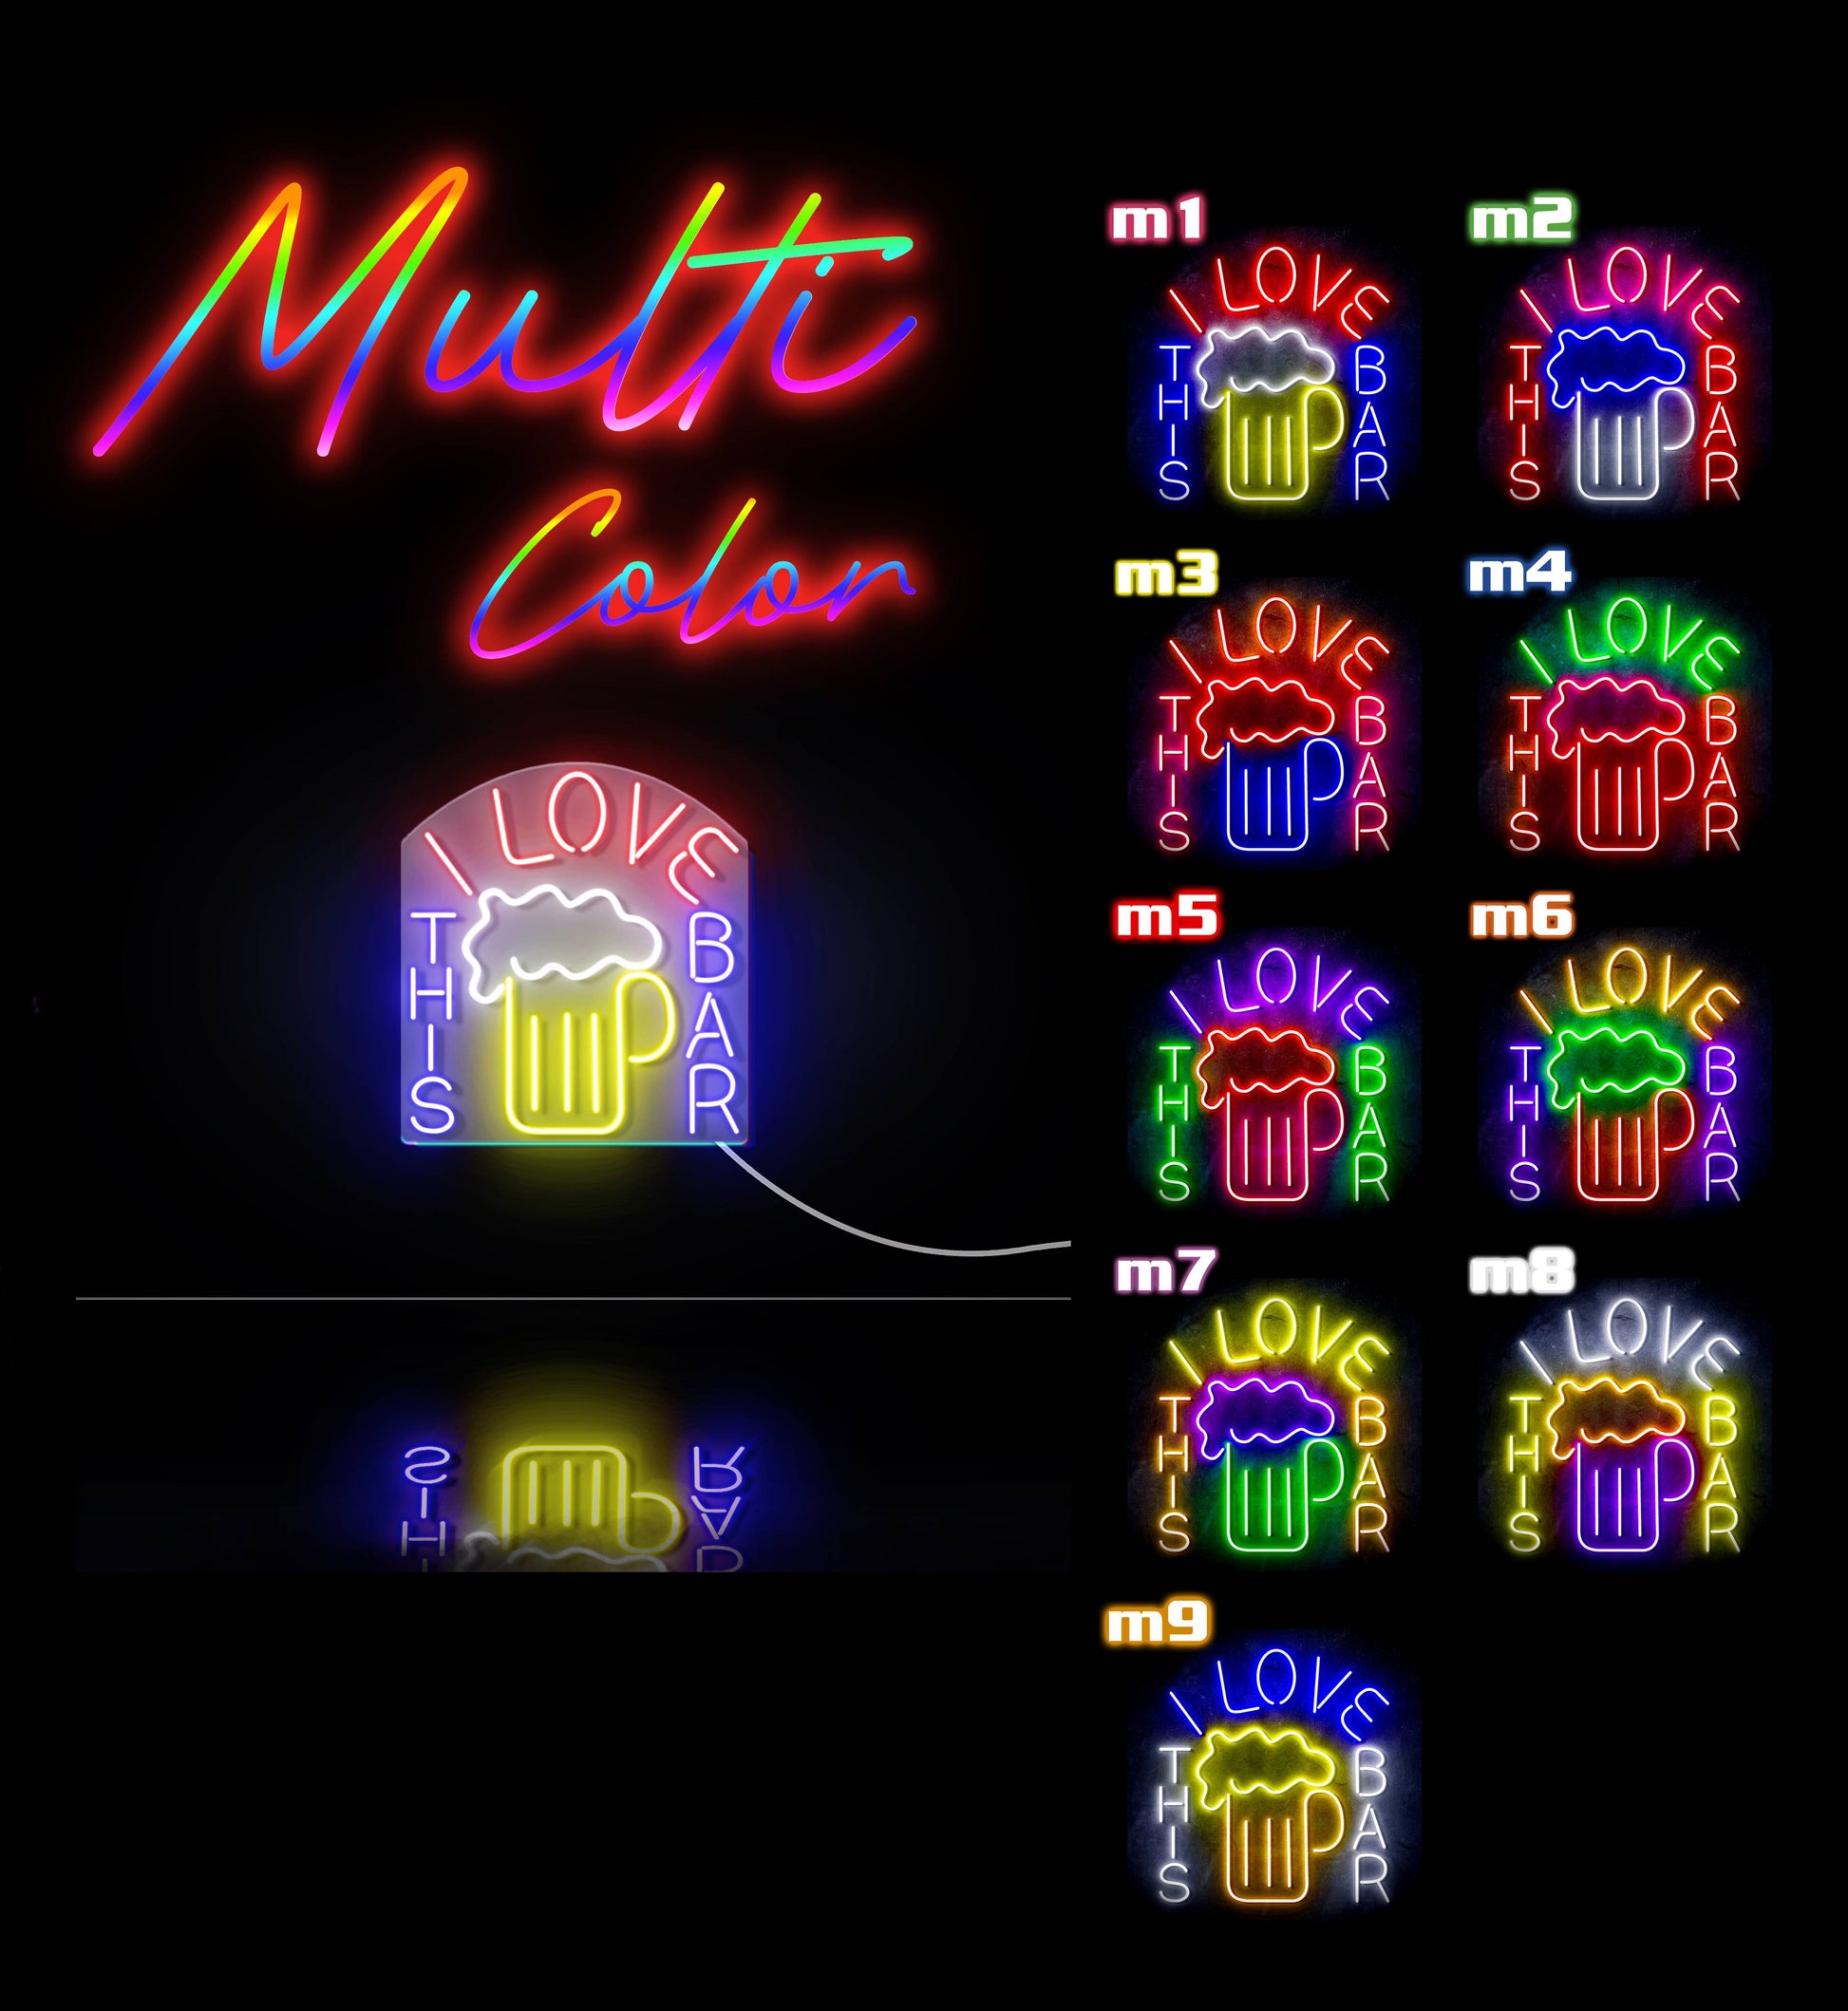 I Love This Bar Beer Mug Ultra-Bright LED Neon Sign - Way Up Gifts